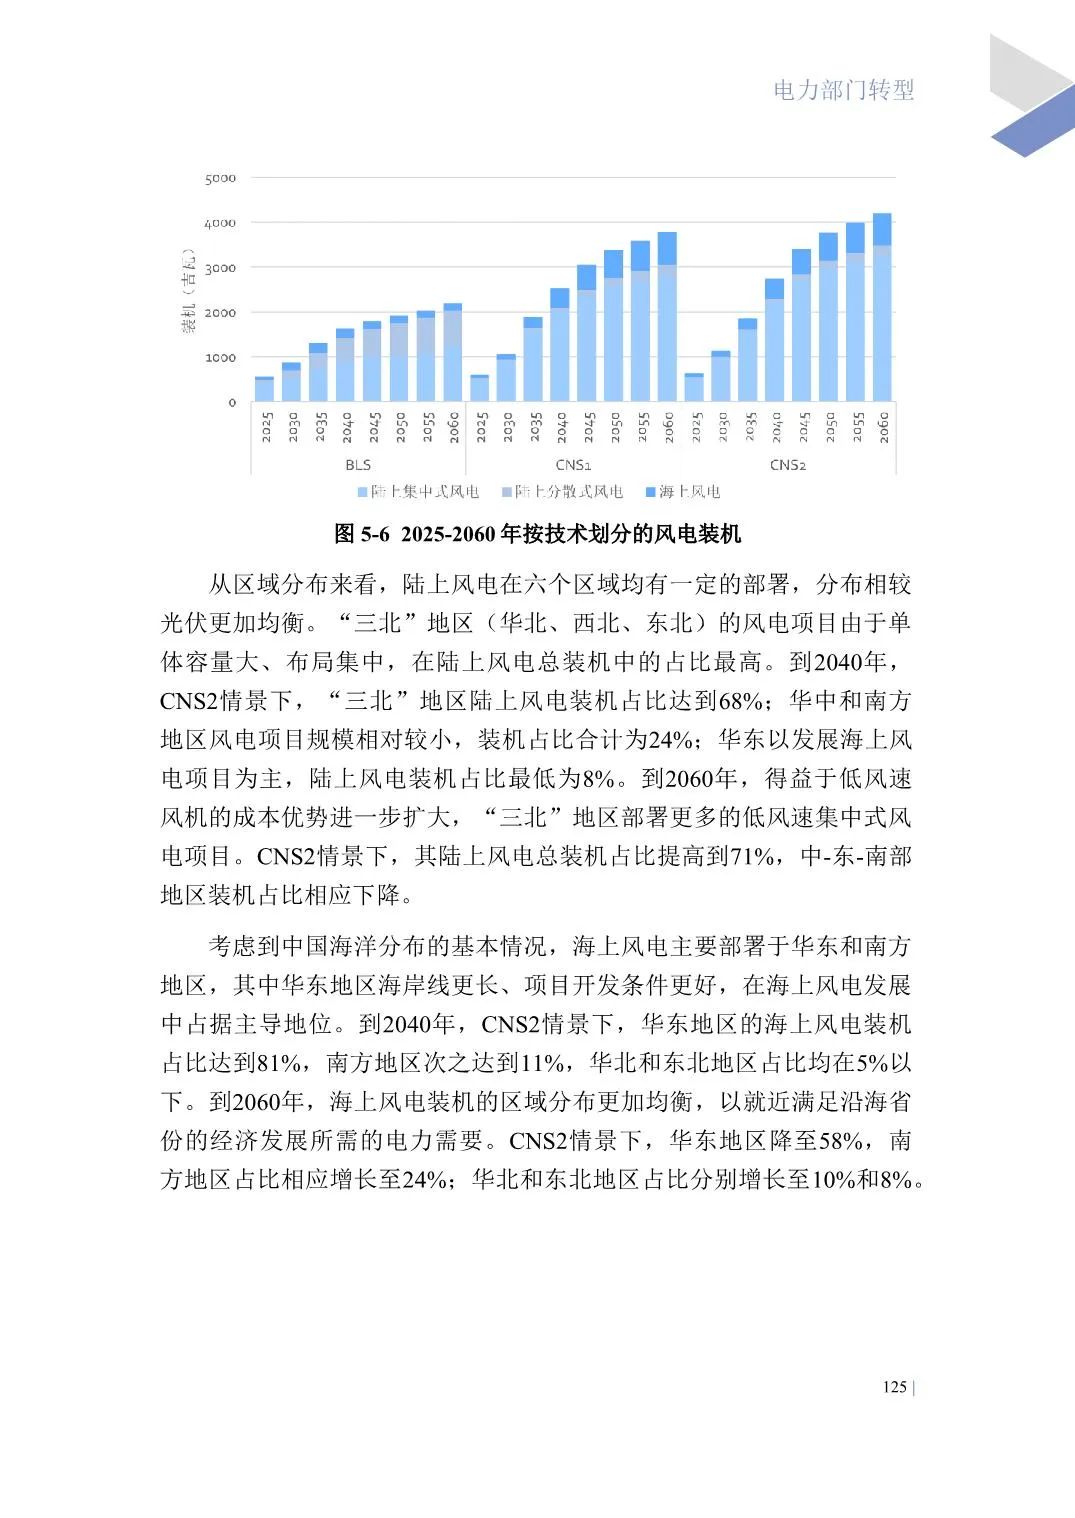 中国能源转型展望2023